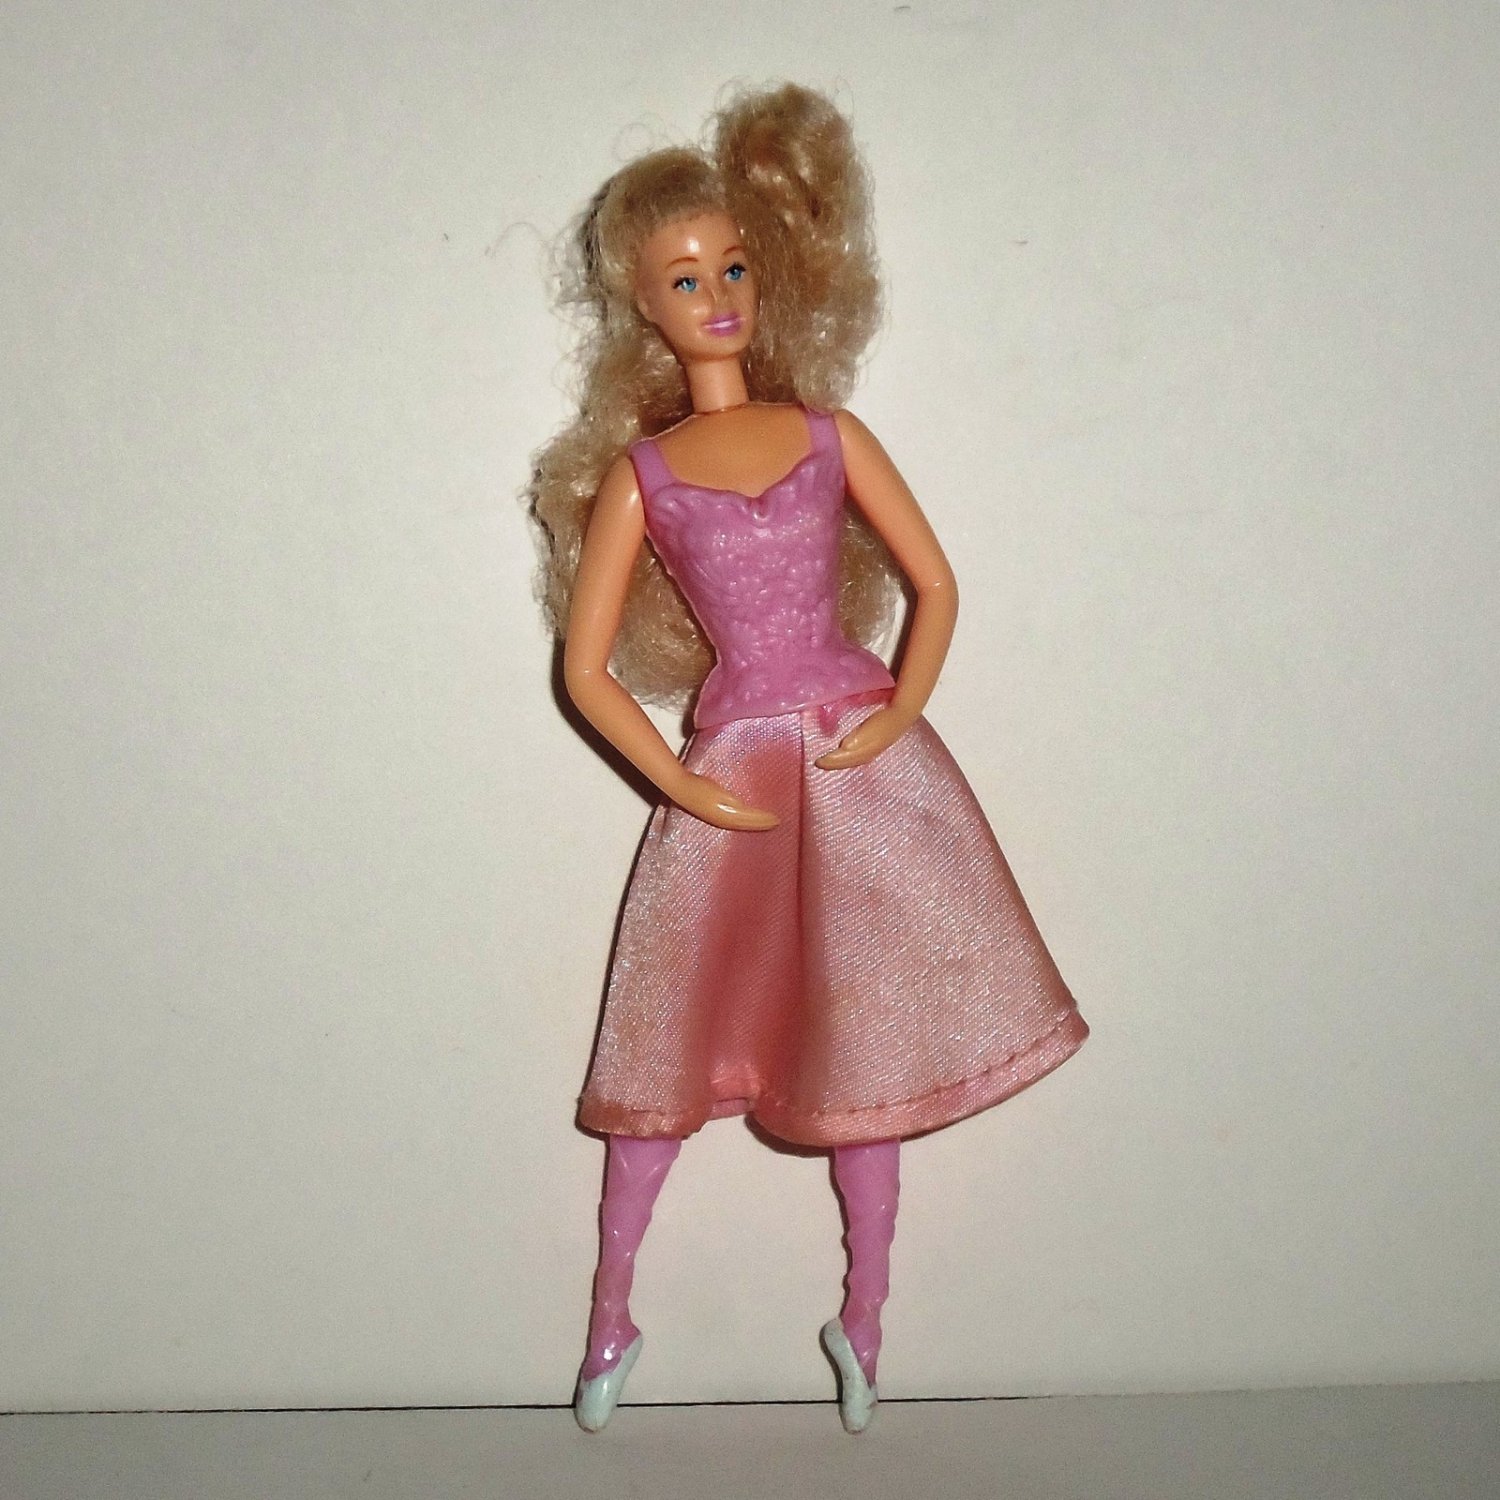 2001 Barbie Toy From Mcdonald’s # 5 Nutcracker Barbie 